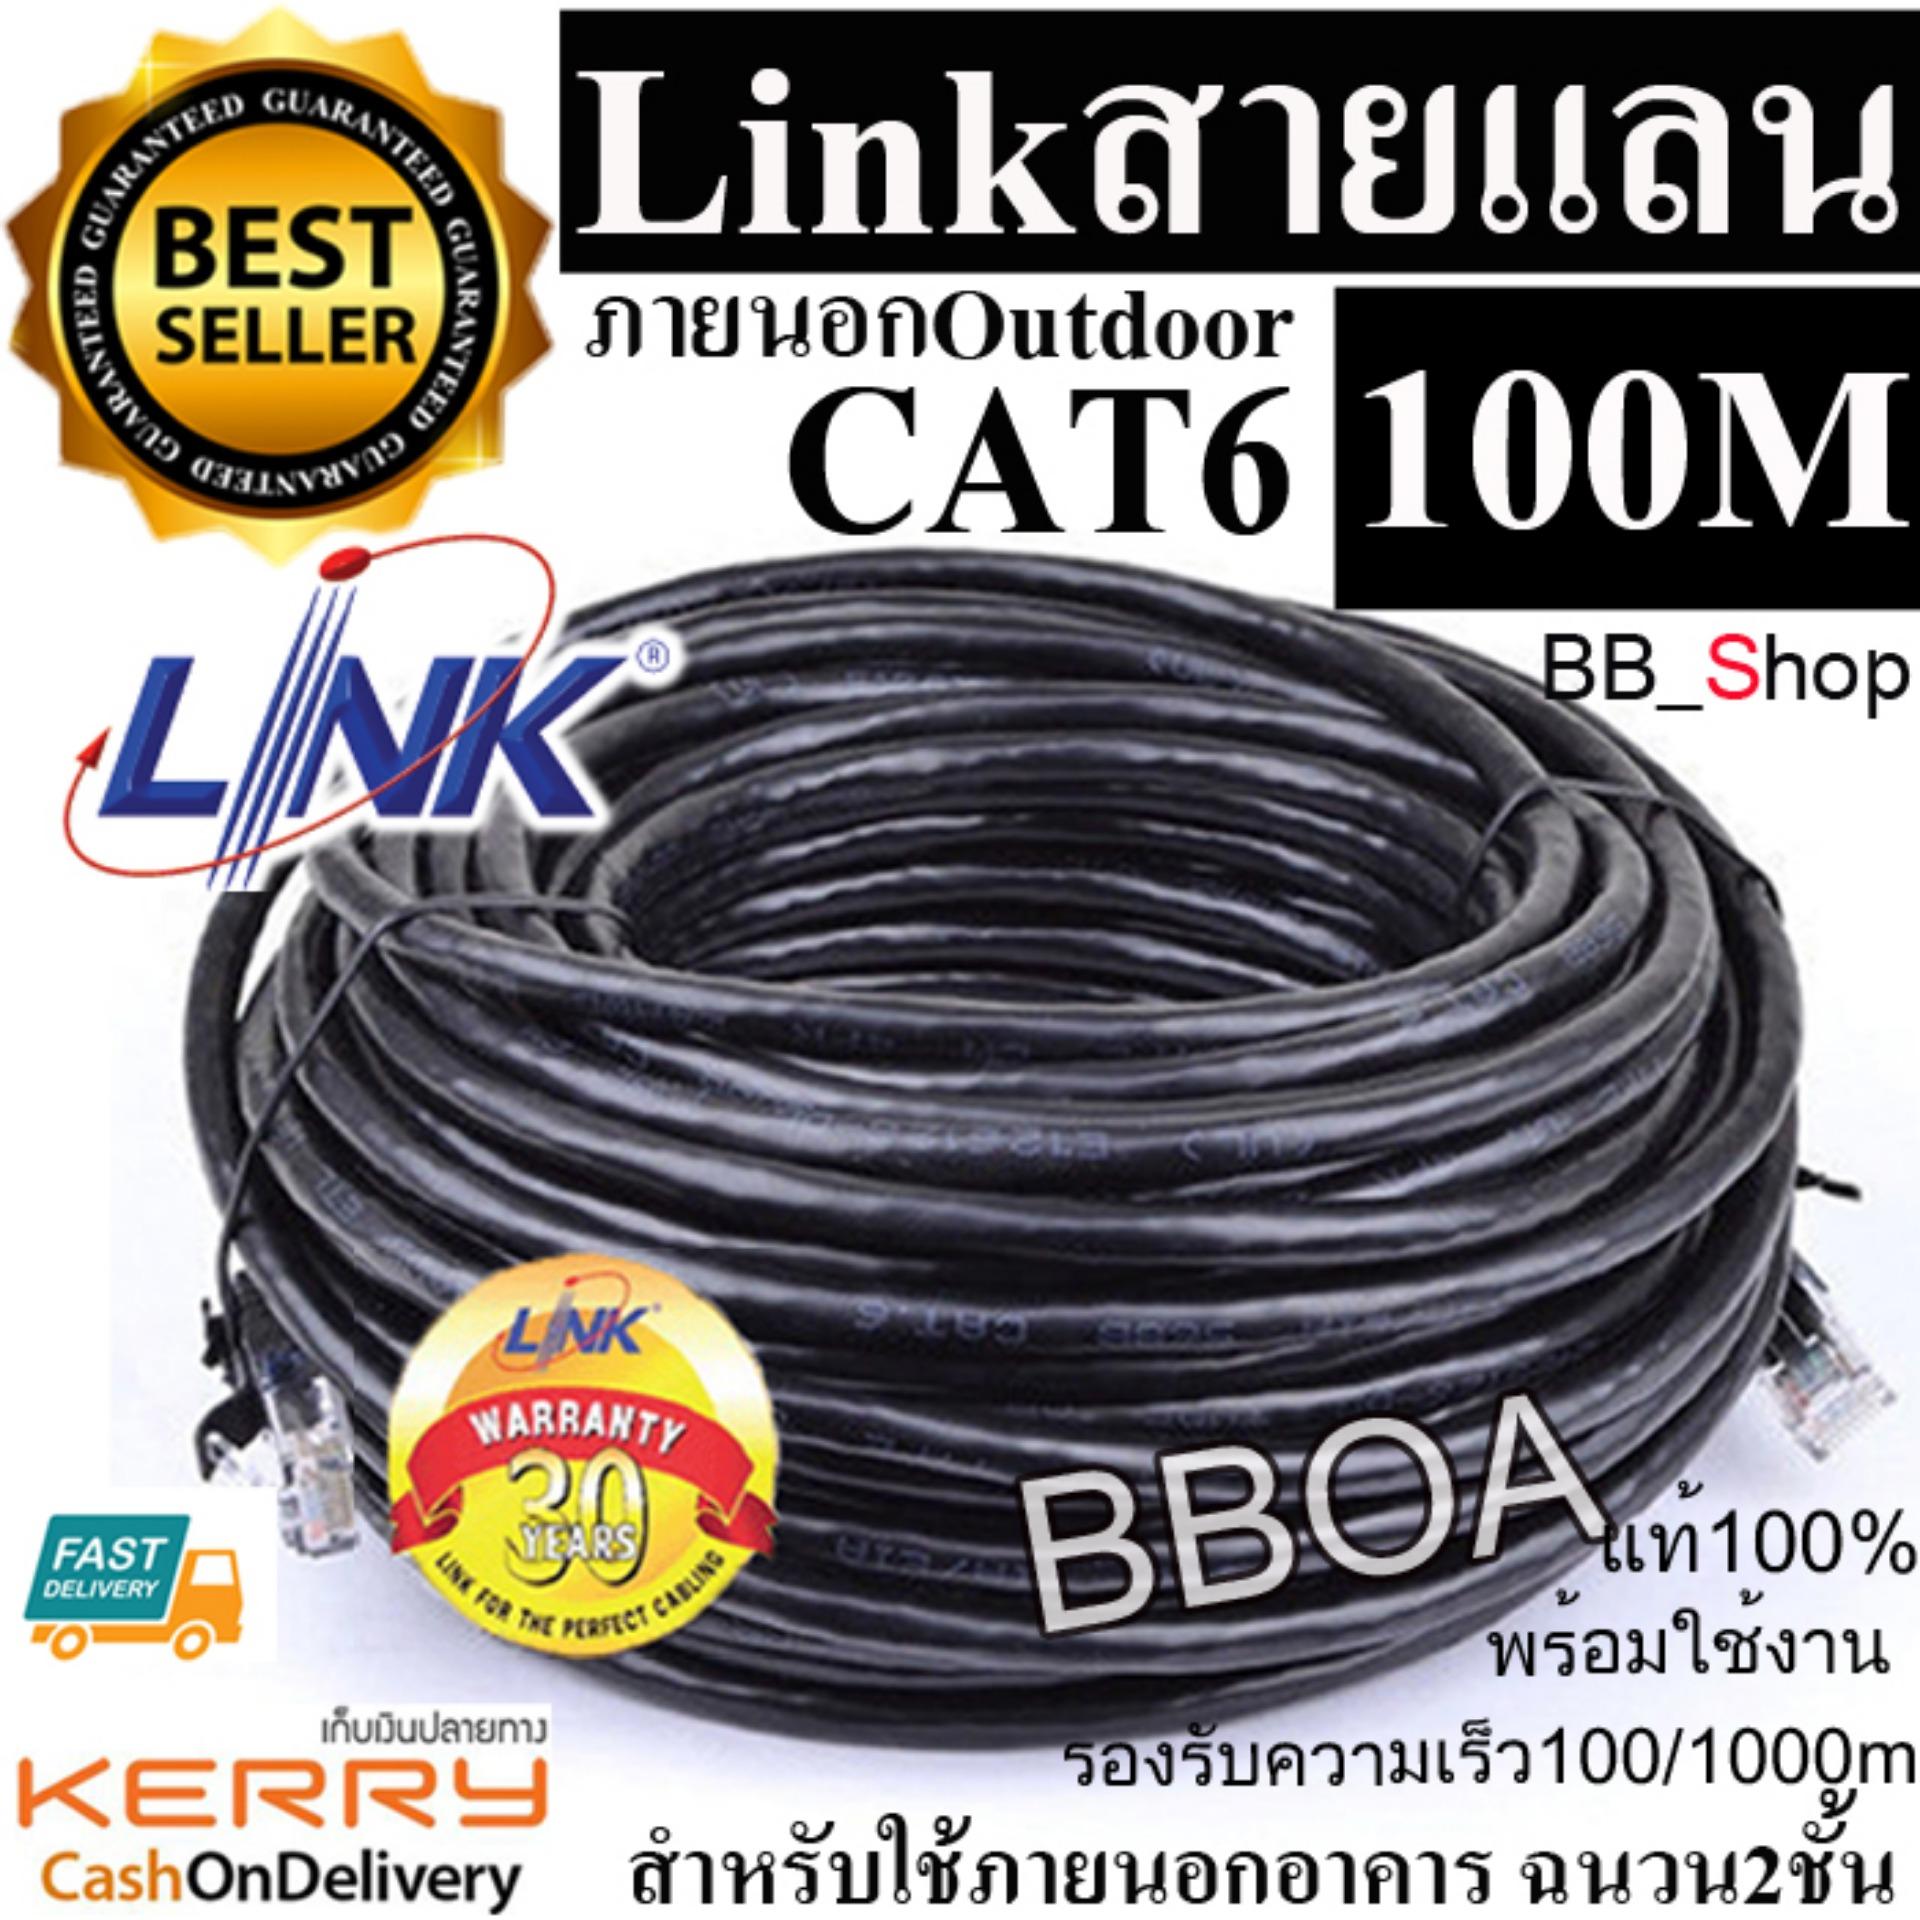 Link Utp Cable Cat5E Outdoor 30M สายแลน(ภายนอกอาคาร)สำเร็จรูปพร้อมใช้งาน  ยาว 30เมตร (Black) | Lazada.Co.Th